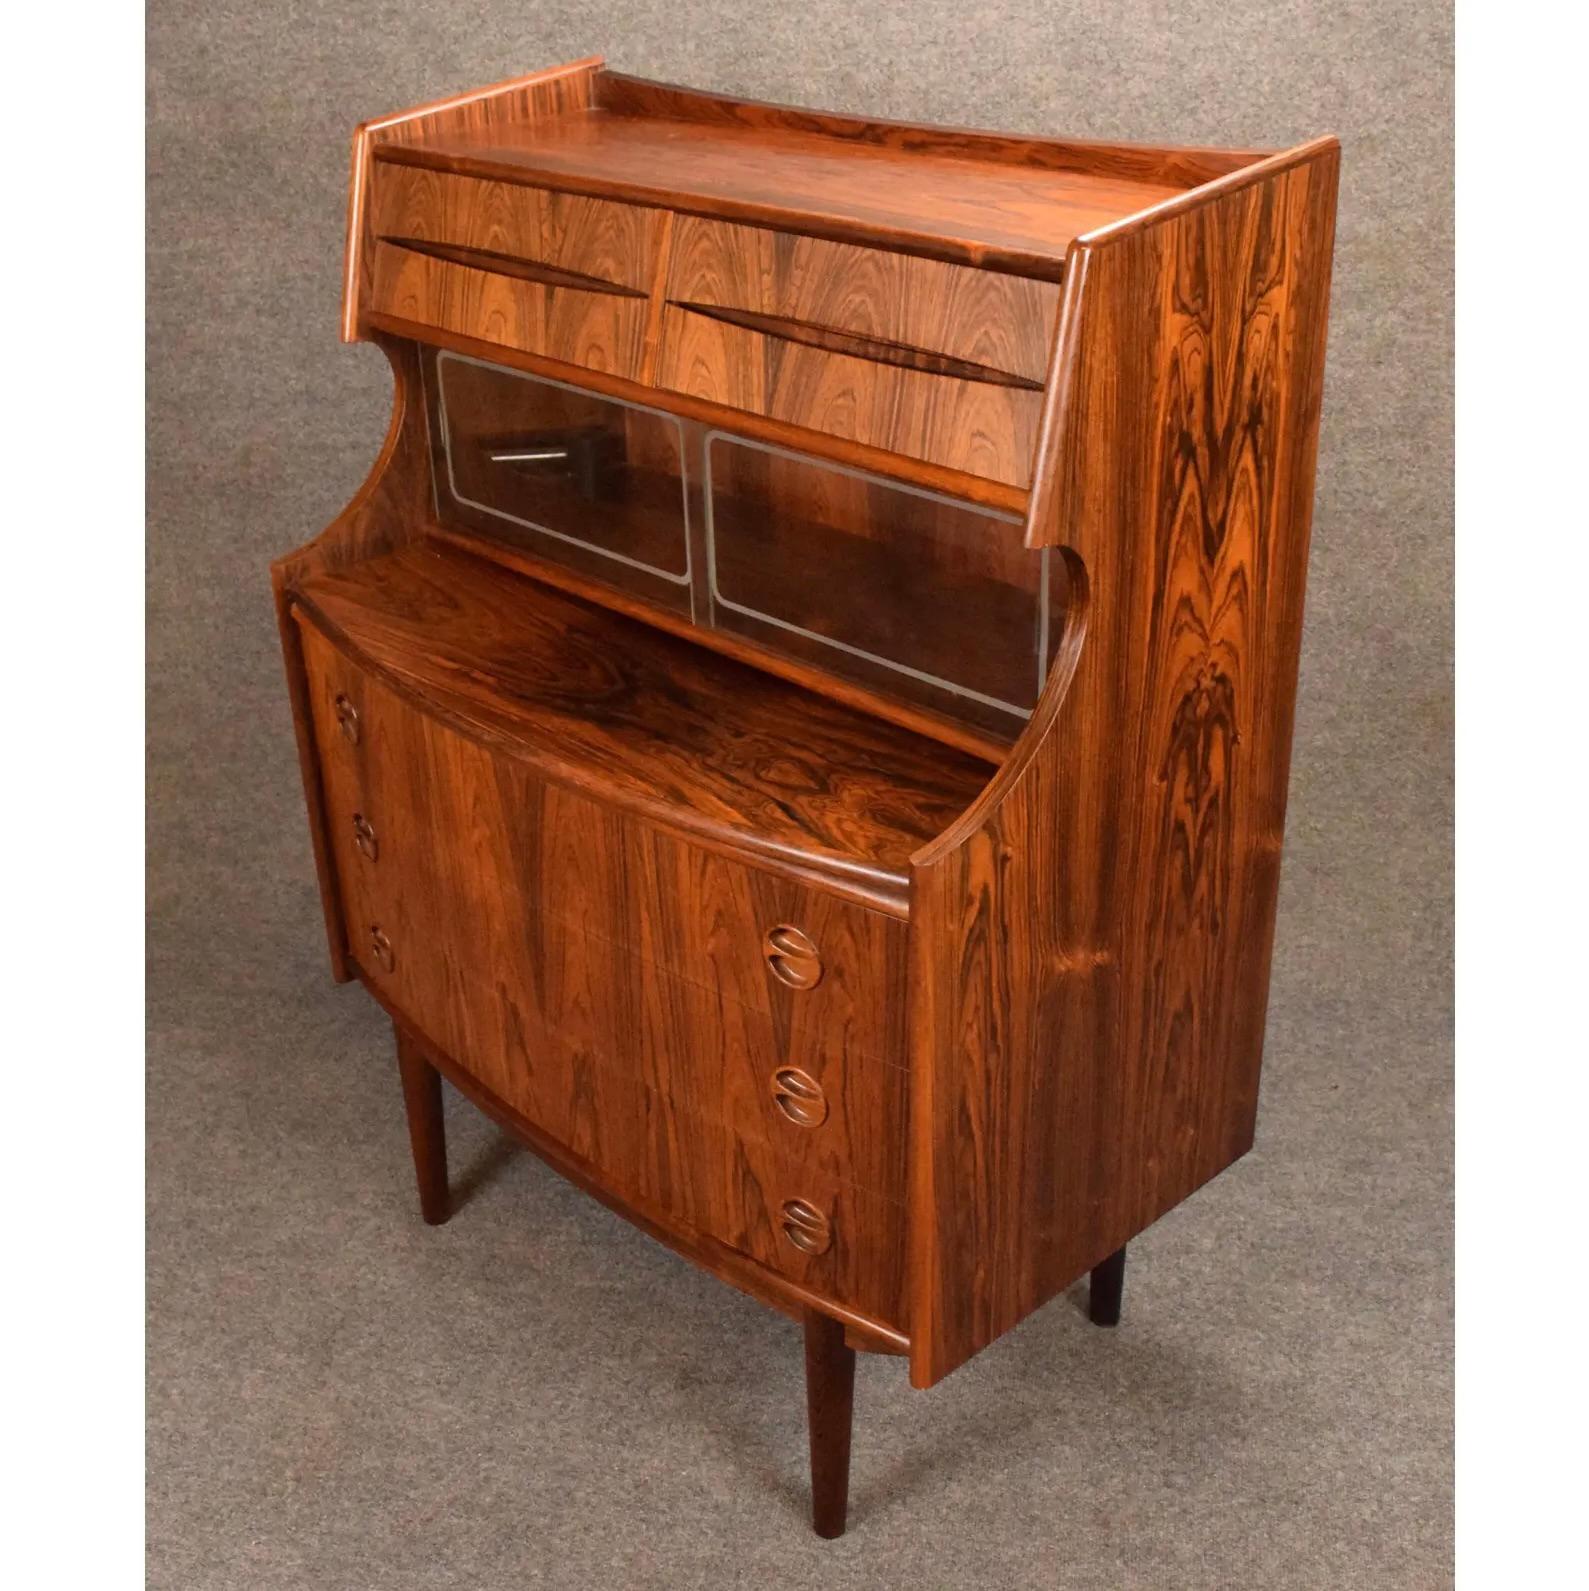 Vintage Danish Mid Century Modern Rosewood Secretary Desk by Falsig Mobler For Sale 4